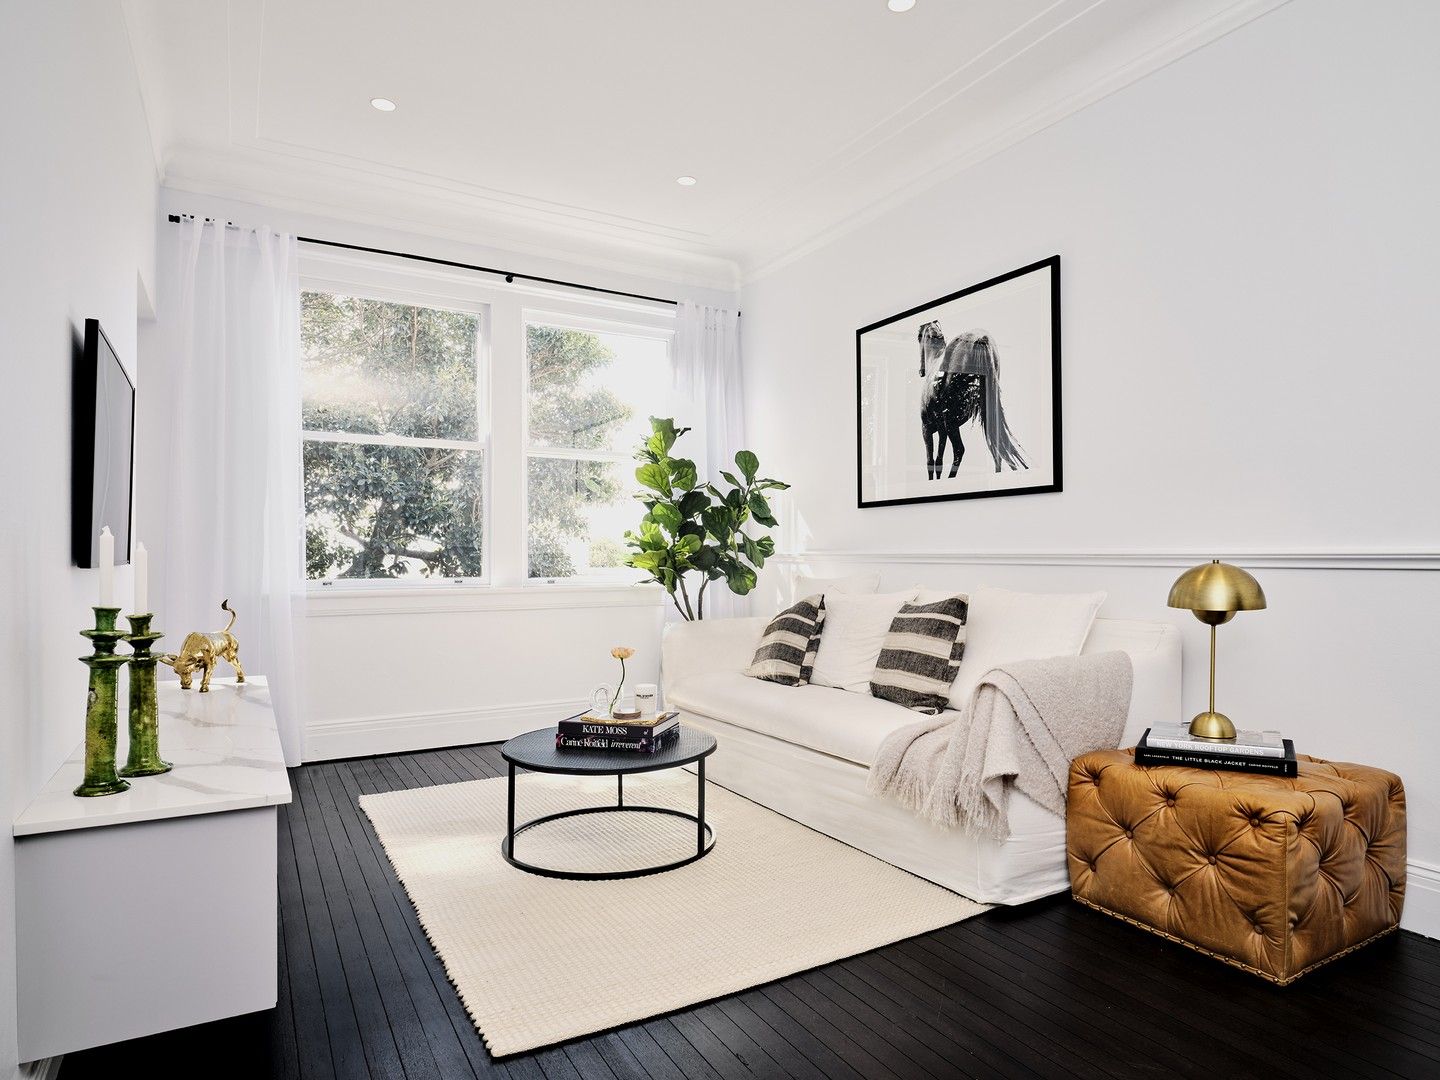 2 bedrooms Apartment / Unit / Flat in 12/40a Birriga Road BELLEVUE HILL NSW, 2023